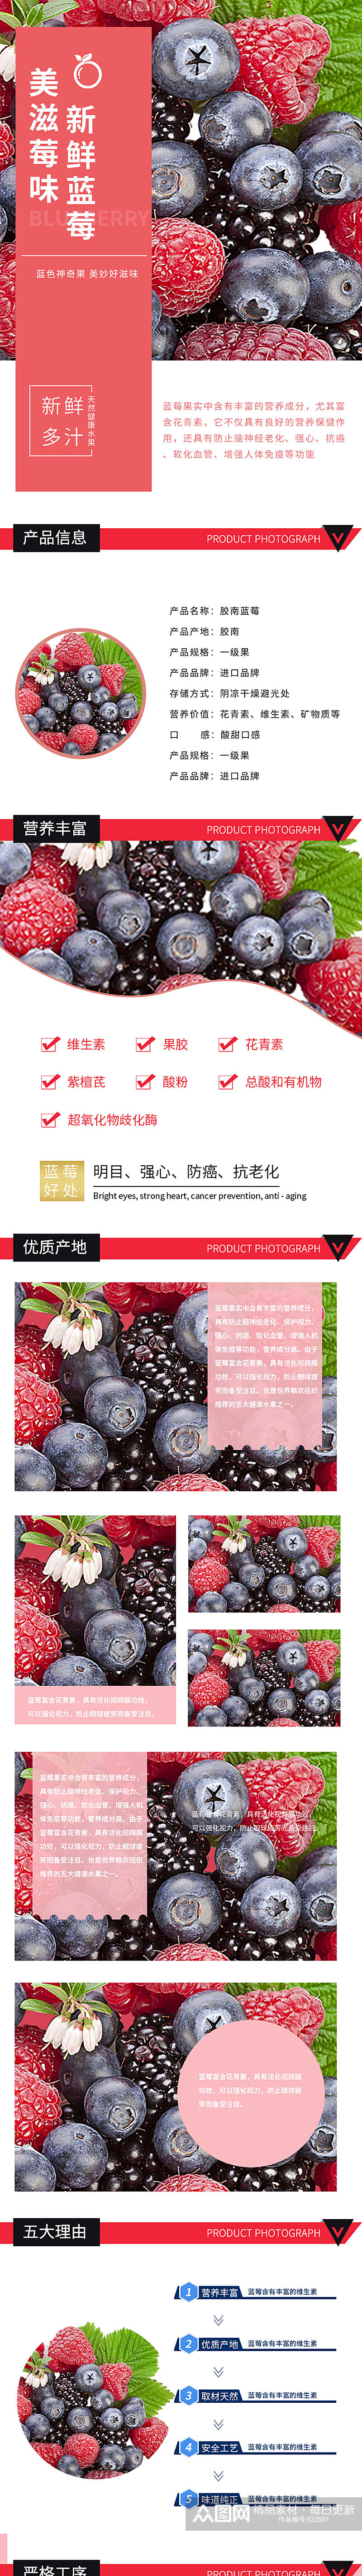 新鲜蓝莓水果淘宝首页详情页套装素材